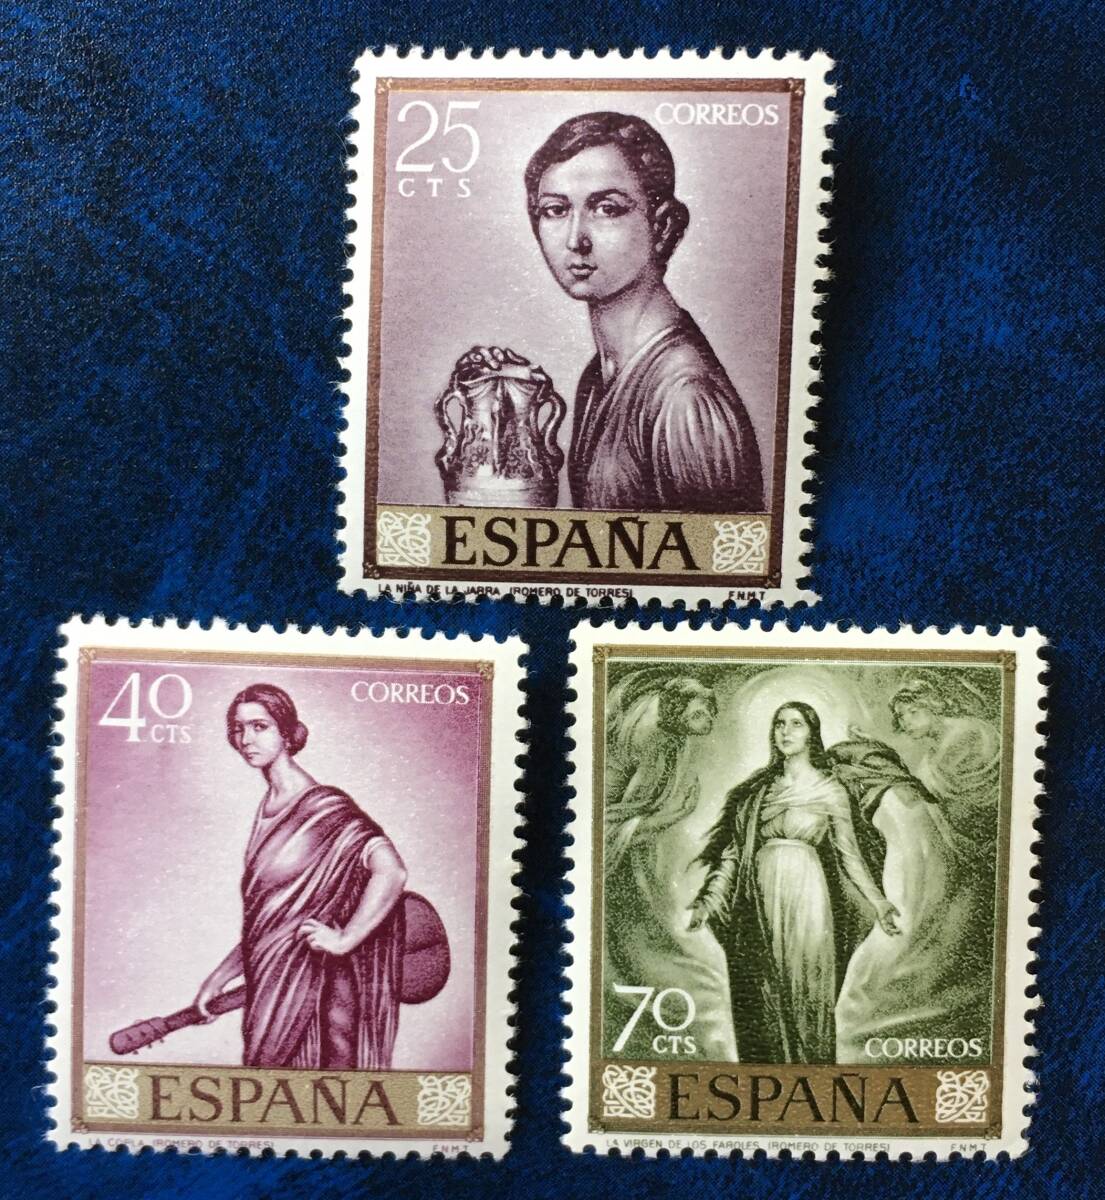 [绘画邮票] 西班牙 1965年 罗梅罗·德·托雷斯 画作 3种 未使用 罗梅罗·德·托雷斯 拿着瓶子的女孩 等, 古董, 收藏, 邮票, 明信片, 欧洲